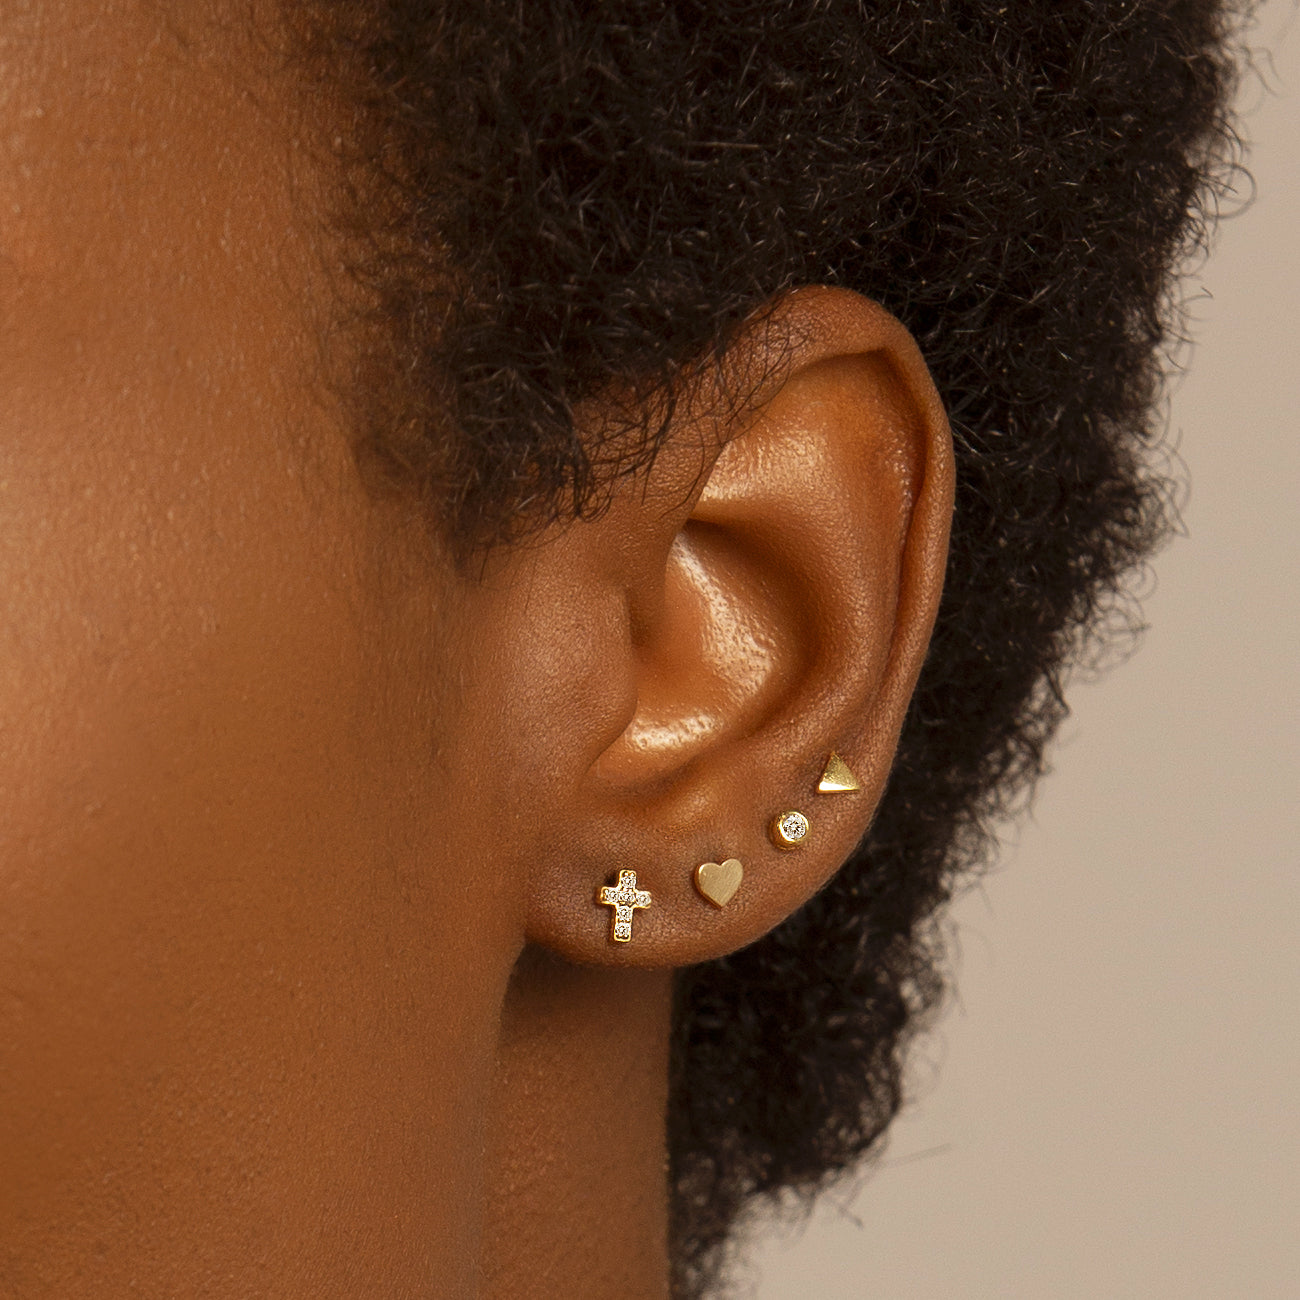 Stud Earrings, Gold Stud Earrings, Tiny Stud Earrings Set – AMYO Jewelry